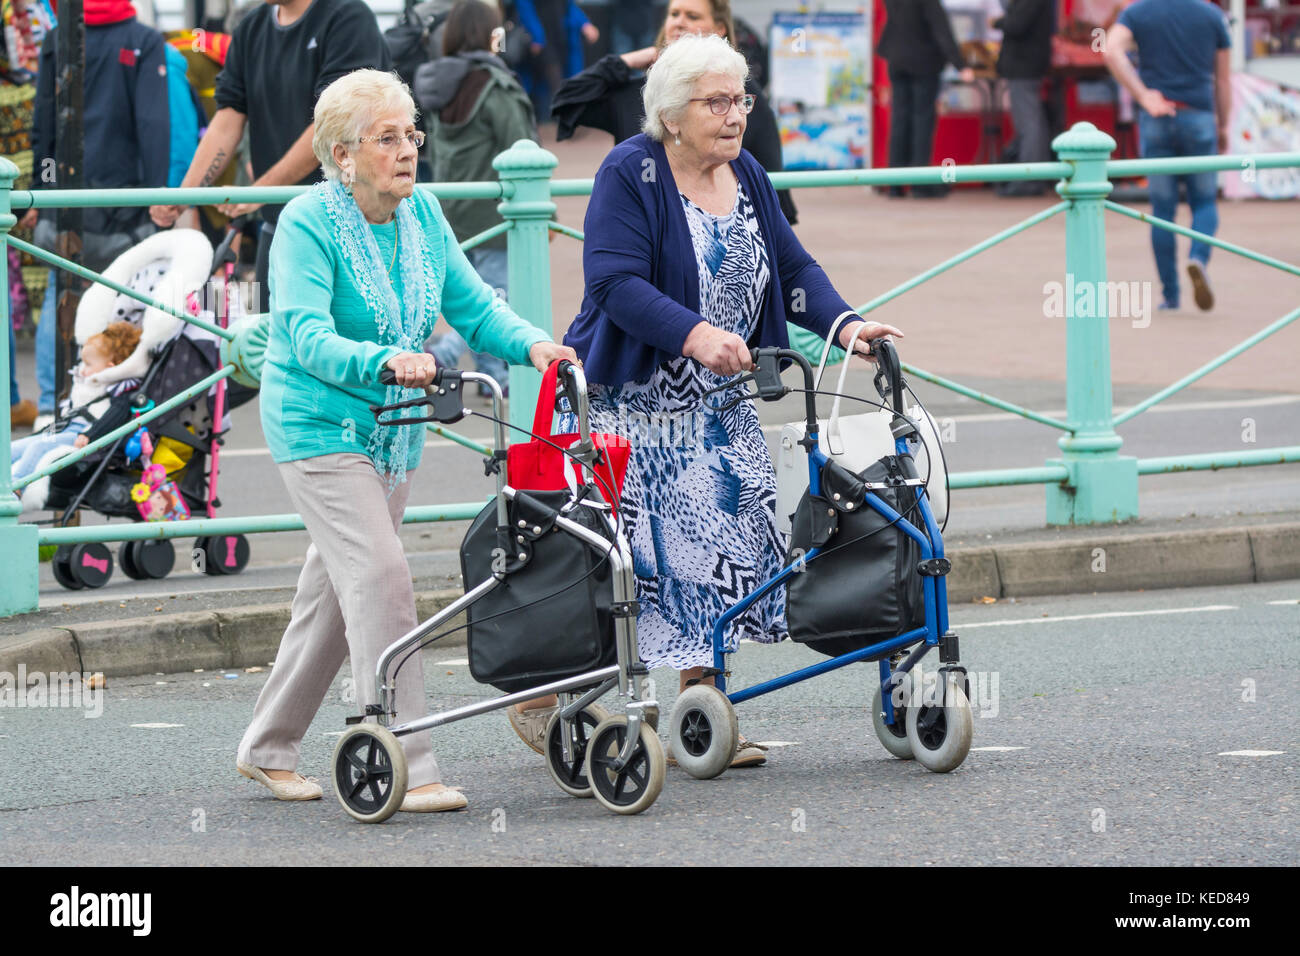 Femmes âgées traversant une route avec des marchettes à roues à Brighton, East Sussex, Angleterre, Royaume-Uni. Cadre Zimmer. Roller. Tous les jours. Banque D'Images